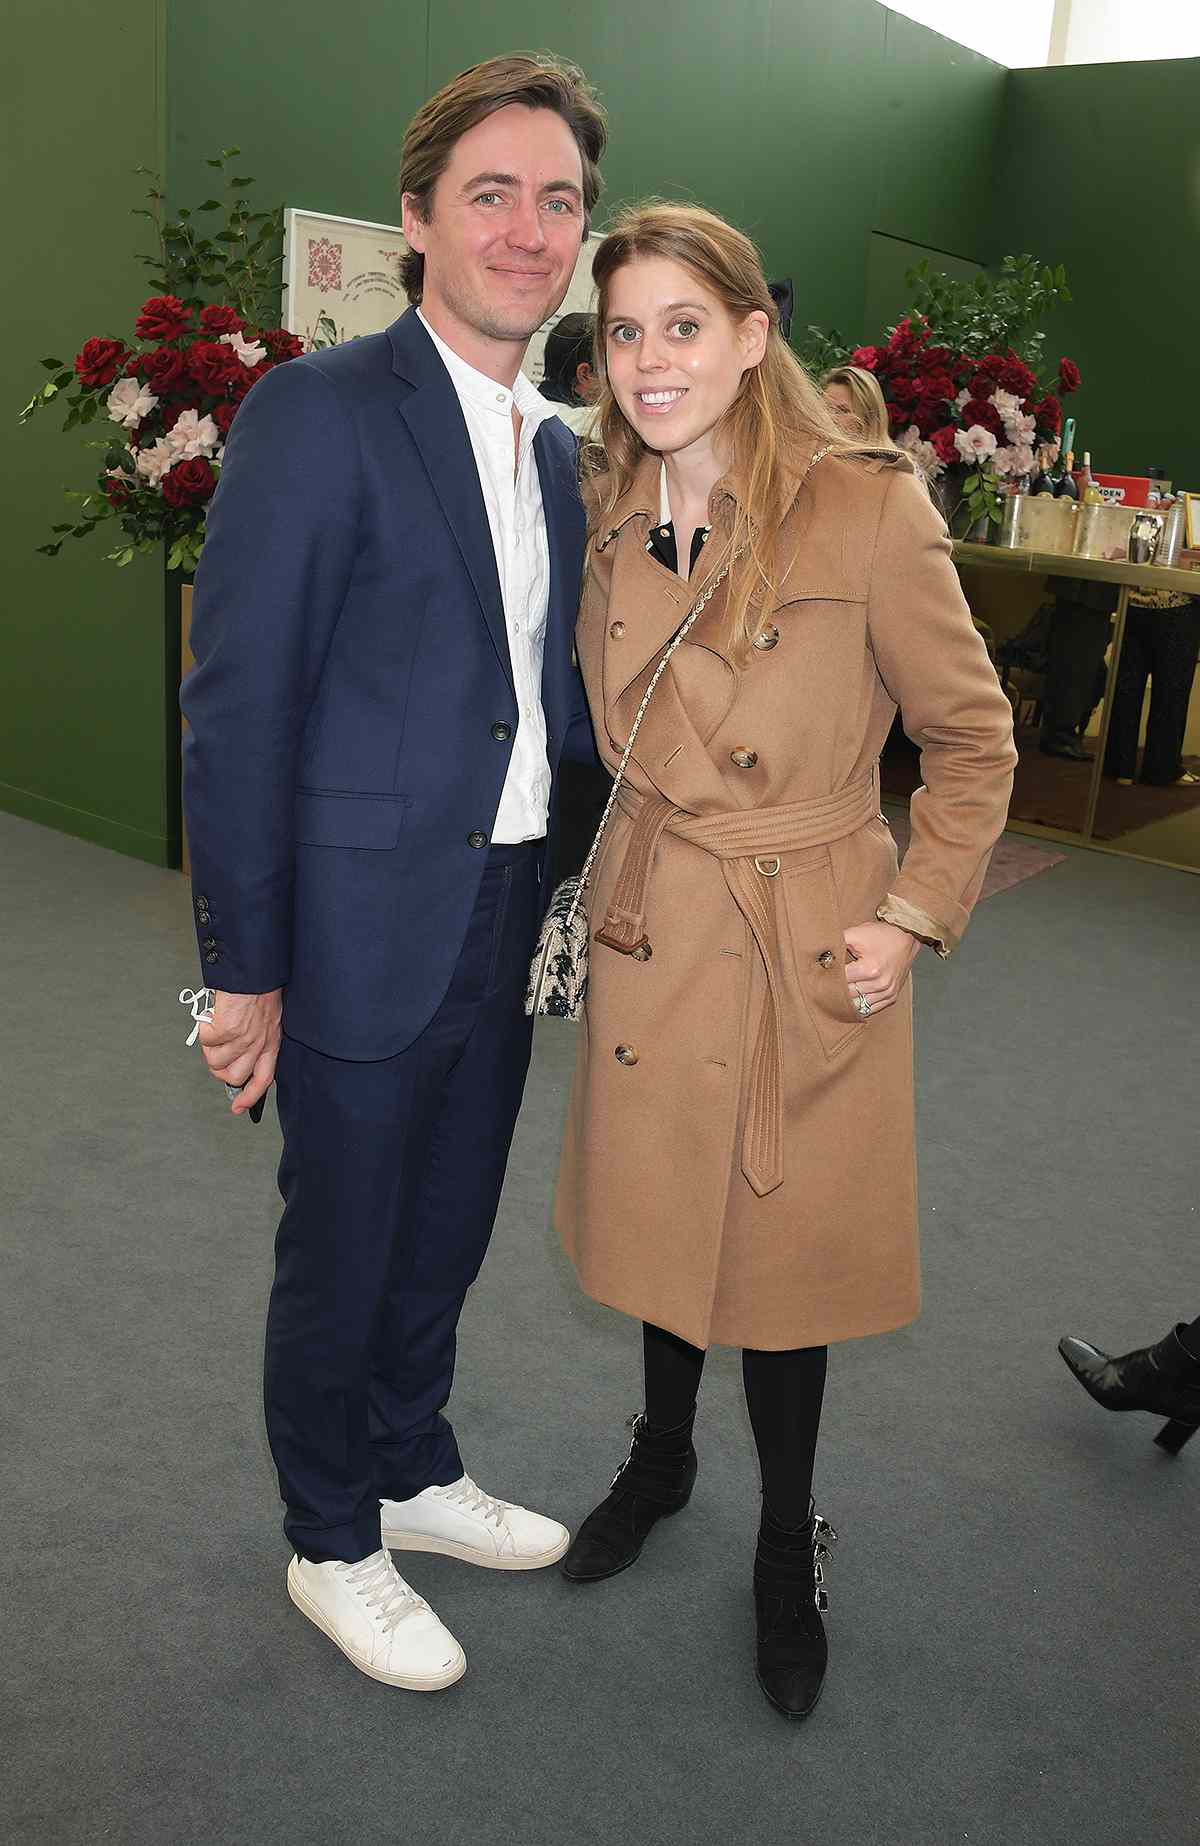 Công chúa Beatrice và Edoardo Mapelli Mozzi tham dự hội chợ nghệ thuật một tháng sau khi chào đón con gái Sienna